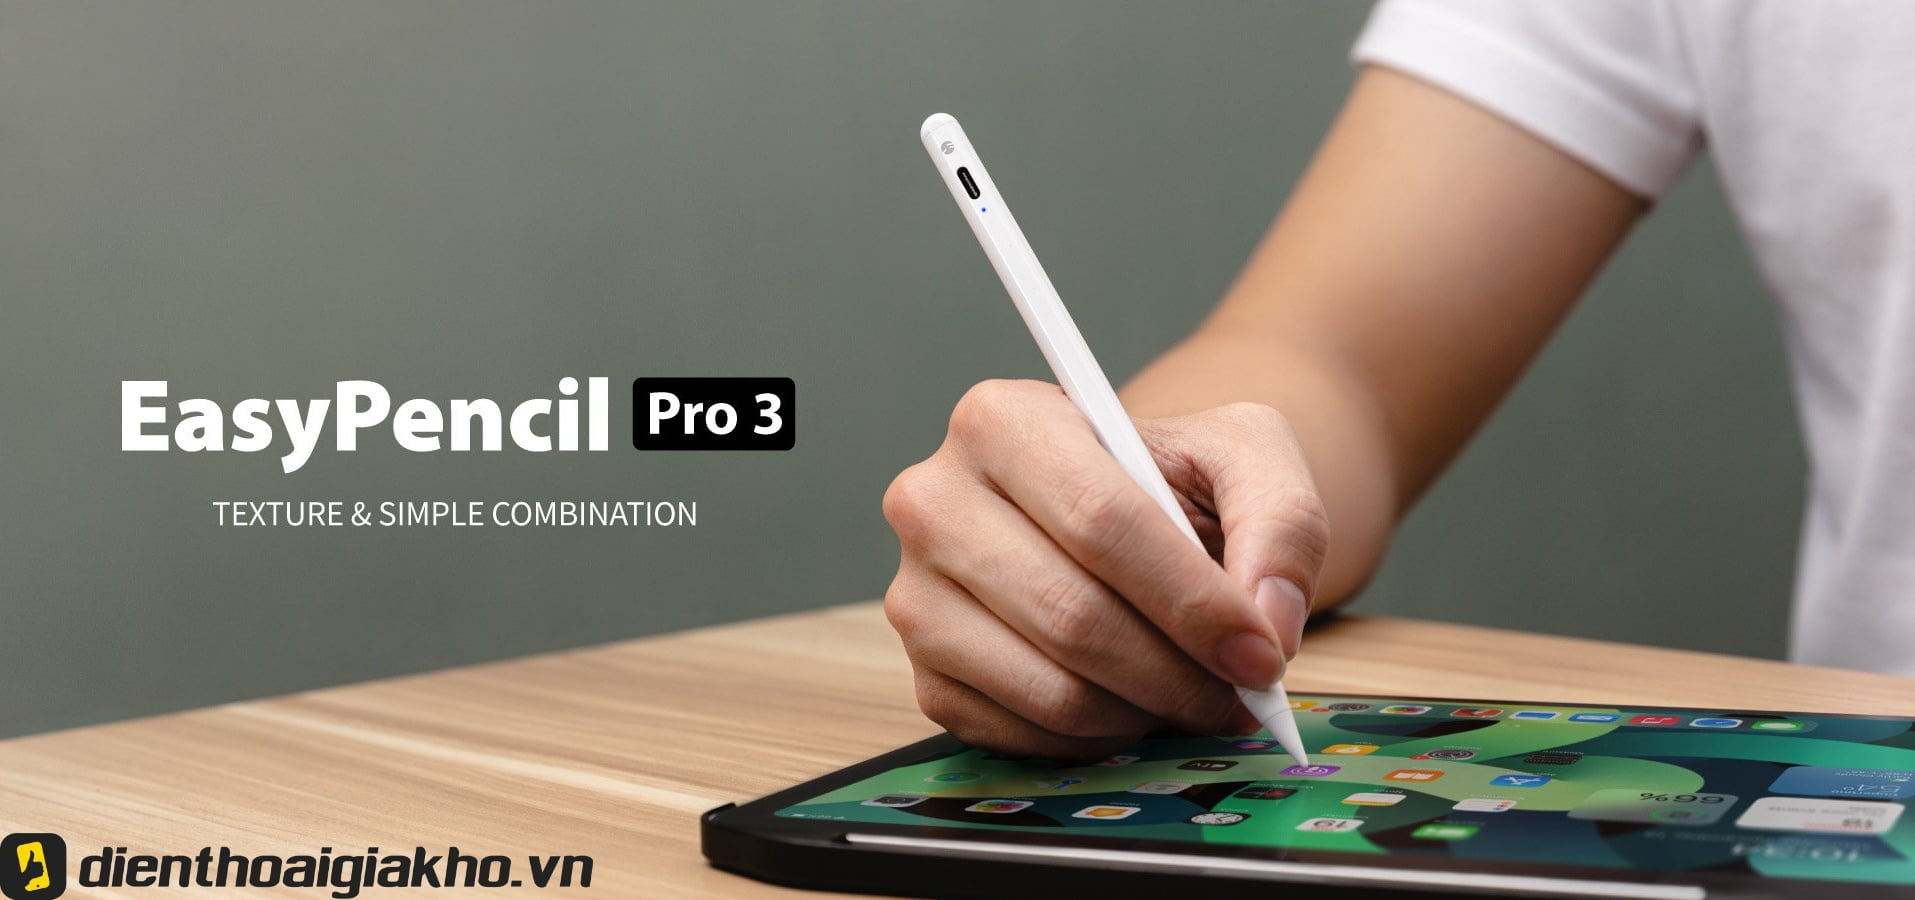 Bút Cảm Ứng Cho Ipad Easy Pencil Pro 3 với mức giá vô cùng hấp dẫn.